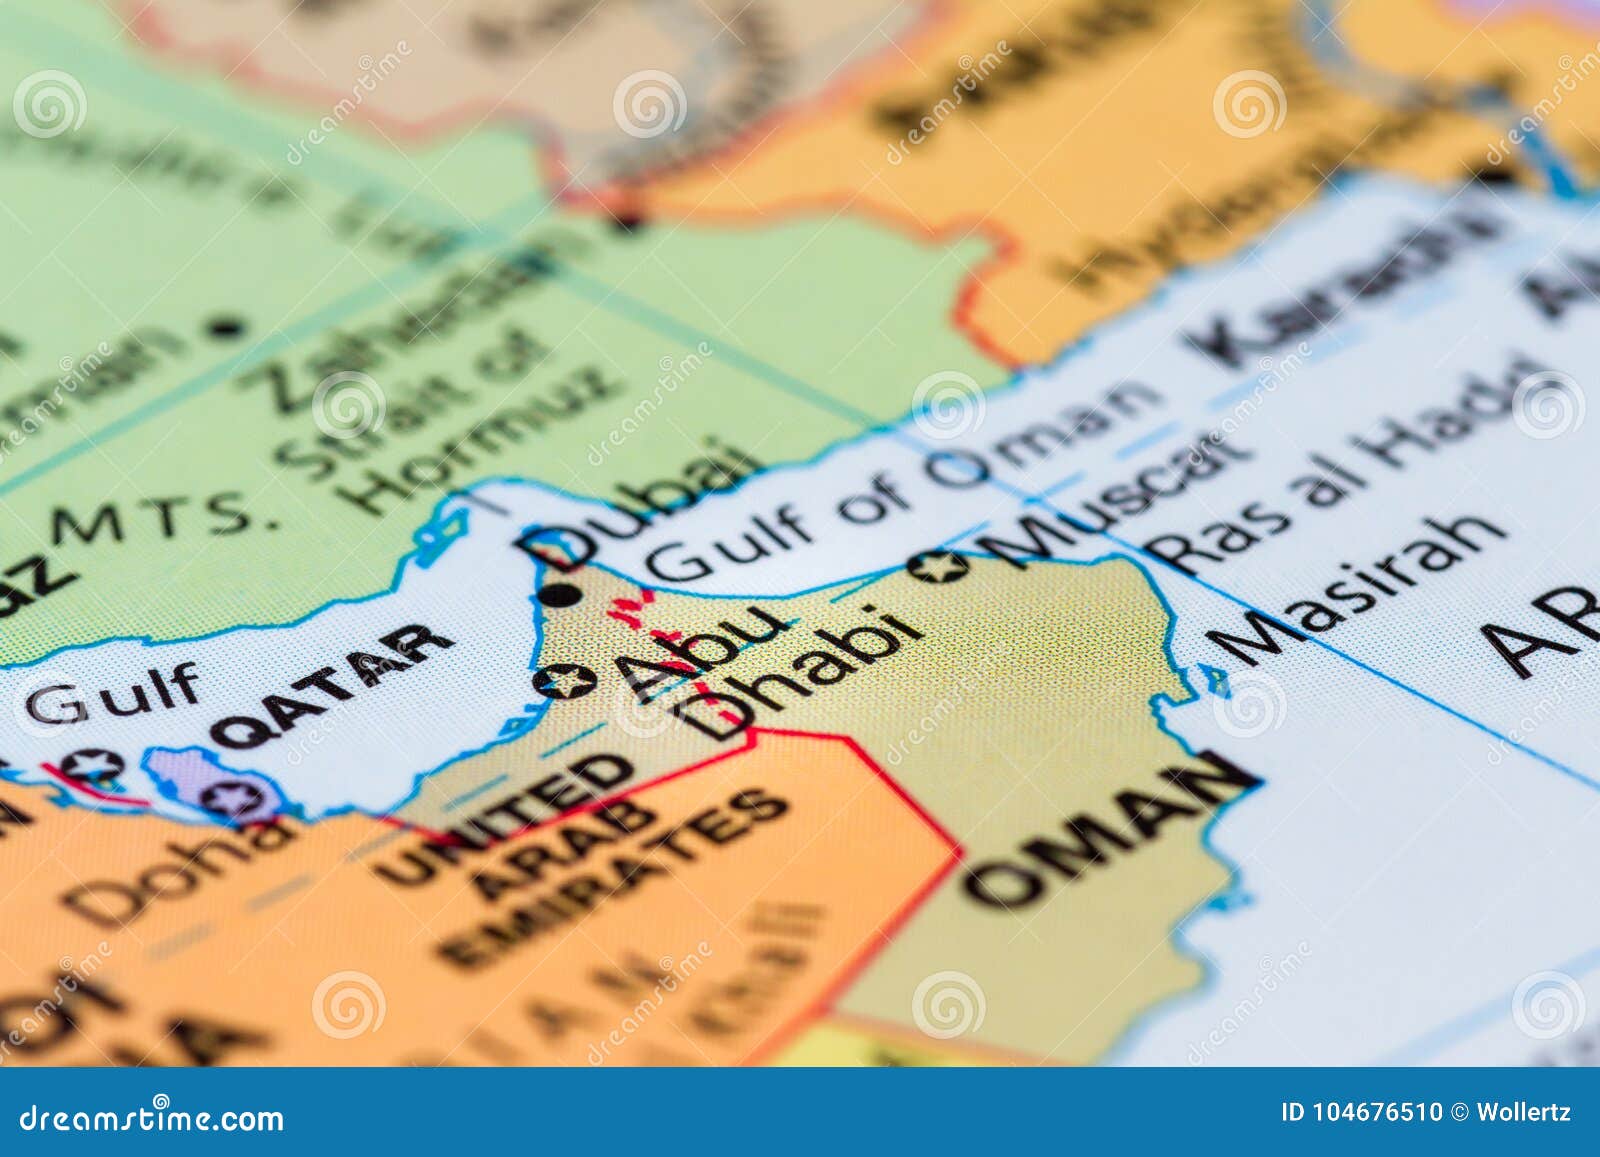 Abu Dhabi Em Um Mapa Foto De Stock Imagem De Mapa Dhabi 104676510